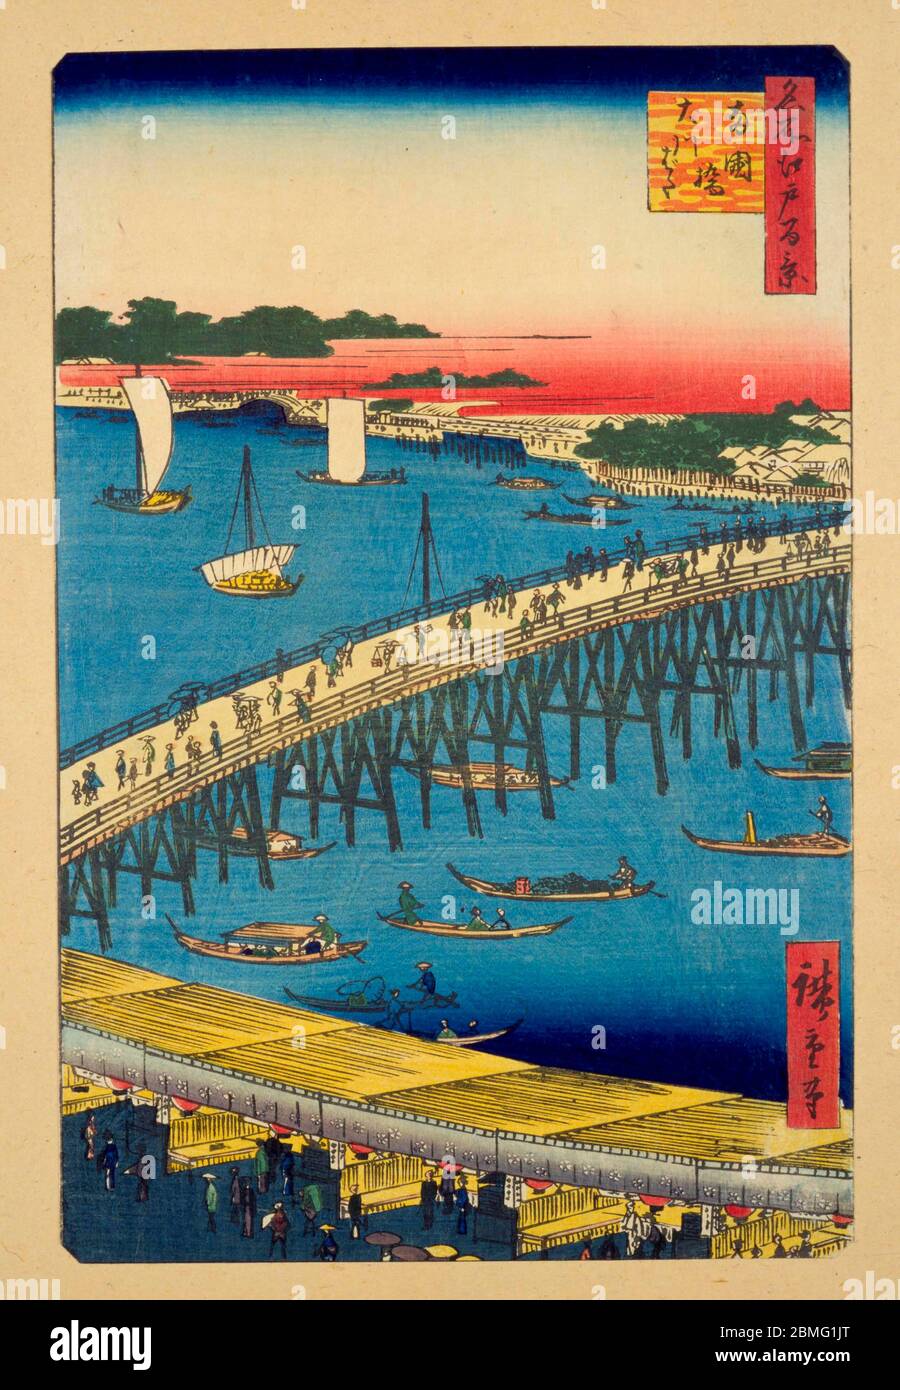 [ 1850er Japan - Ryogokubashi Brücke ] - Boote in der Nähe der Ryogokubashi Brücke über den Sumidagawa Fluss in Edo (aktuelle Tokyo), 1856 (Ansei 3). Dieser Holzschnitt ist Bild 59 in hundert berühmten Ansichten von Edo (名所江戸百景, Meisho Edo Hyakkei), einer Serie von Ukiyoe Künstler Utagawa Hiroshige (歌川広重, 1797–1858) erstellt. Es ist eine von 30 Sommerszenen der Serie. Titel: Ryogoku Brücke und die große Flussbank (両国橋大川ばた, Ryogokubashi Okawabata) 19. Jahrhundert Vintage Ukiyoe Holzschnitt. Stockfoto